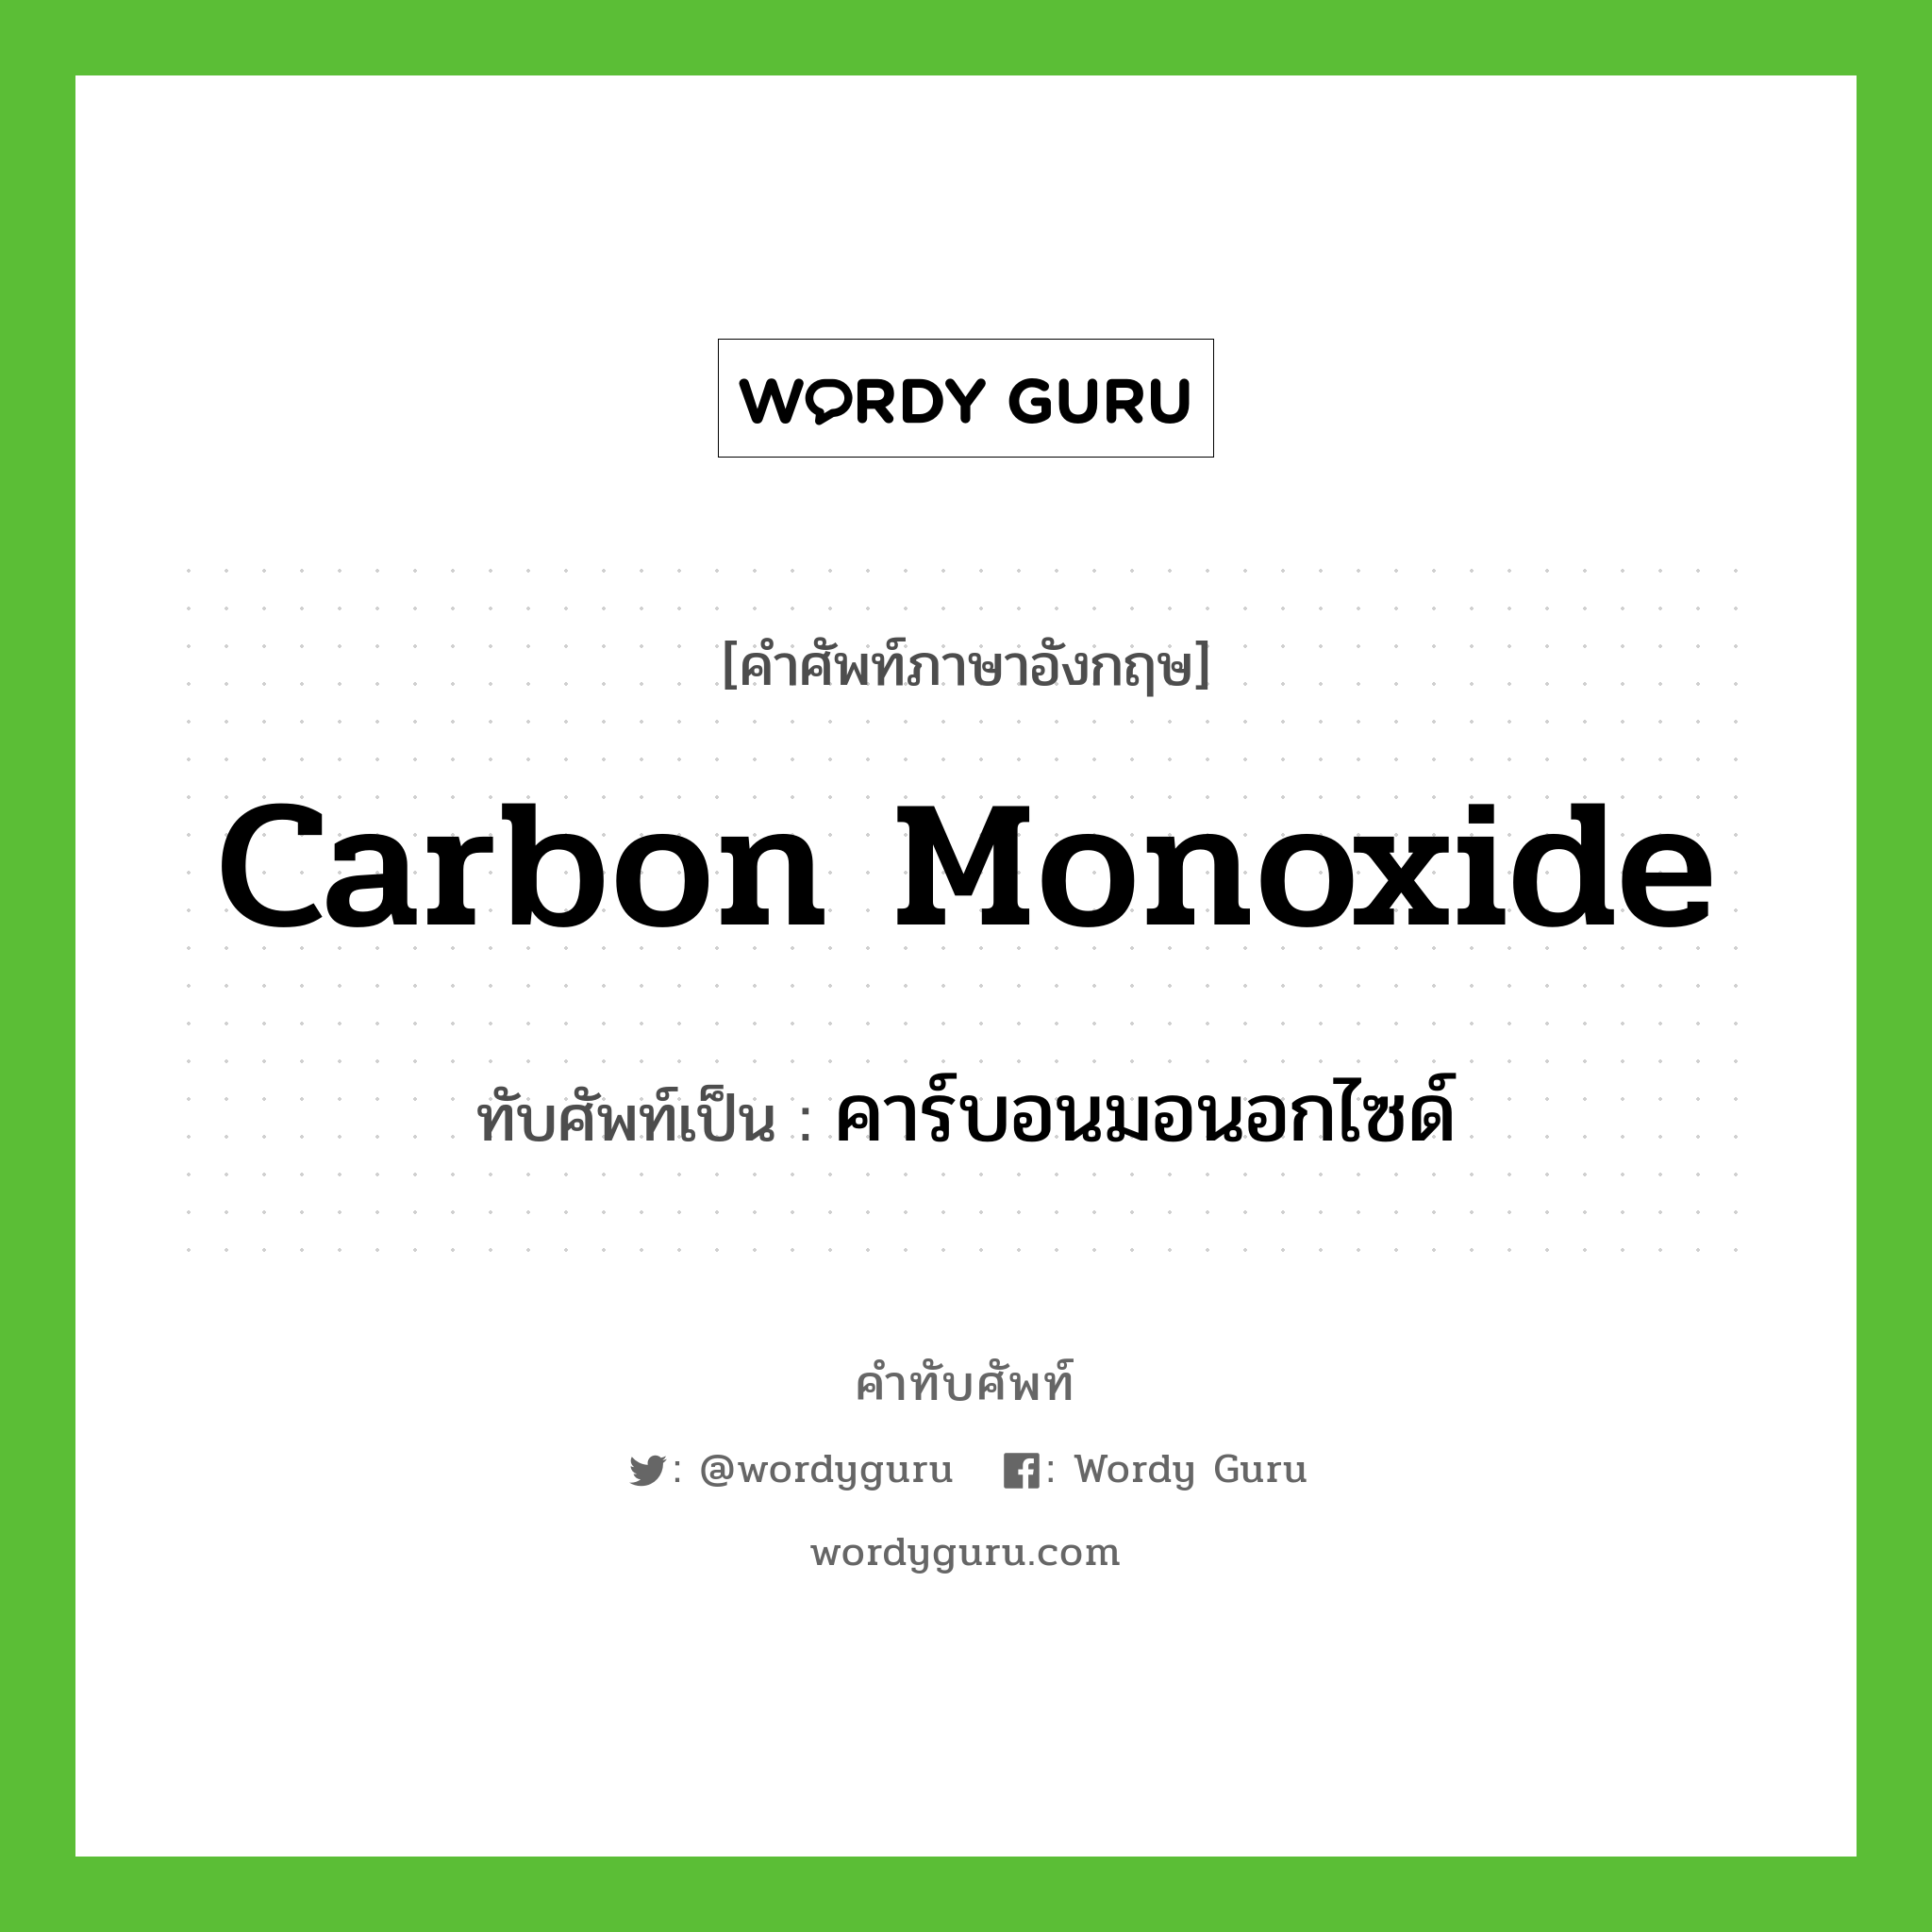 carbon monoxide เขียนเป็นคำไทยว่าอะไร?, คำศัพท์ภาษาอังกฤษ carbon monoxide ทับศัพท์เป็น คาร์บอนมอนอกไซด์